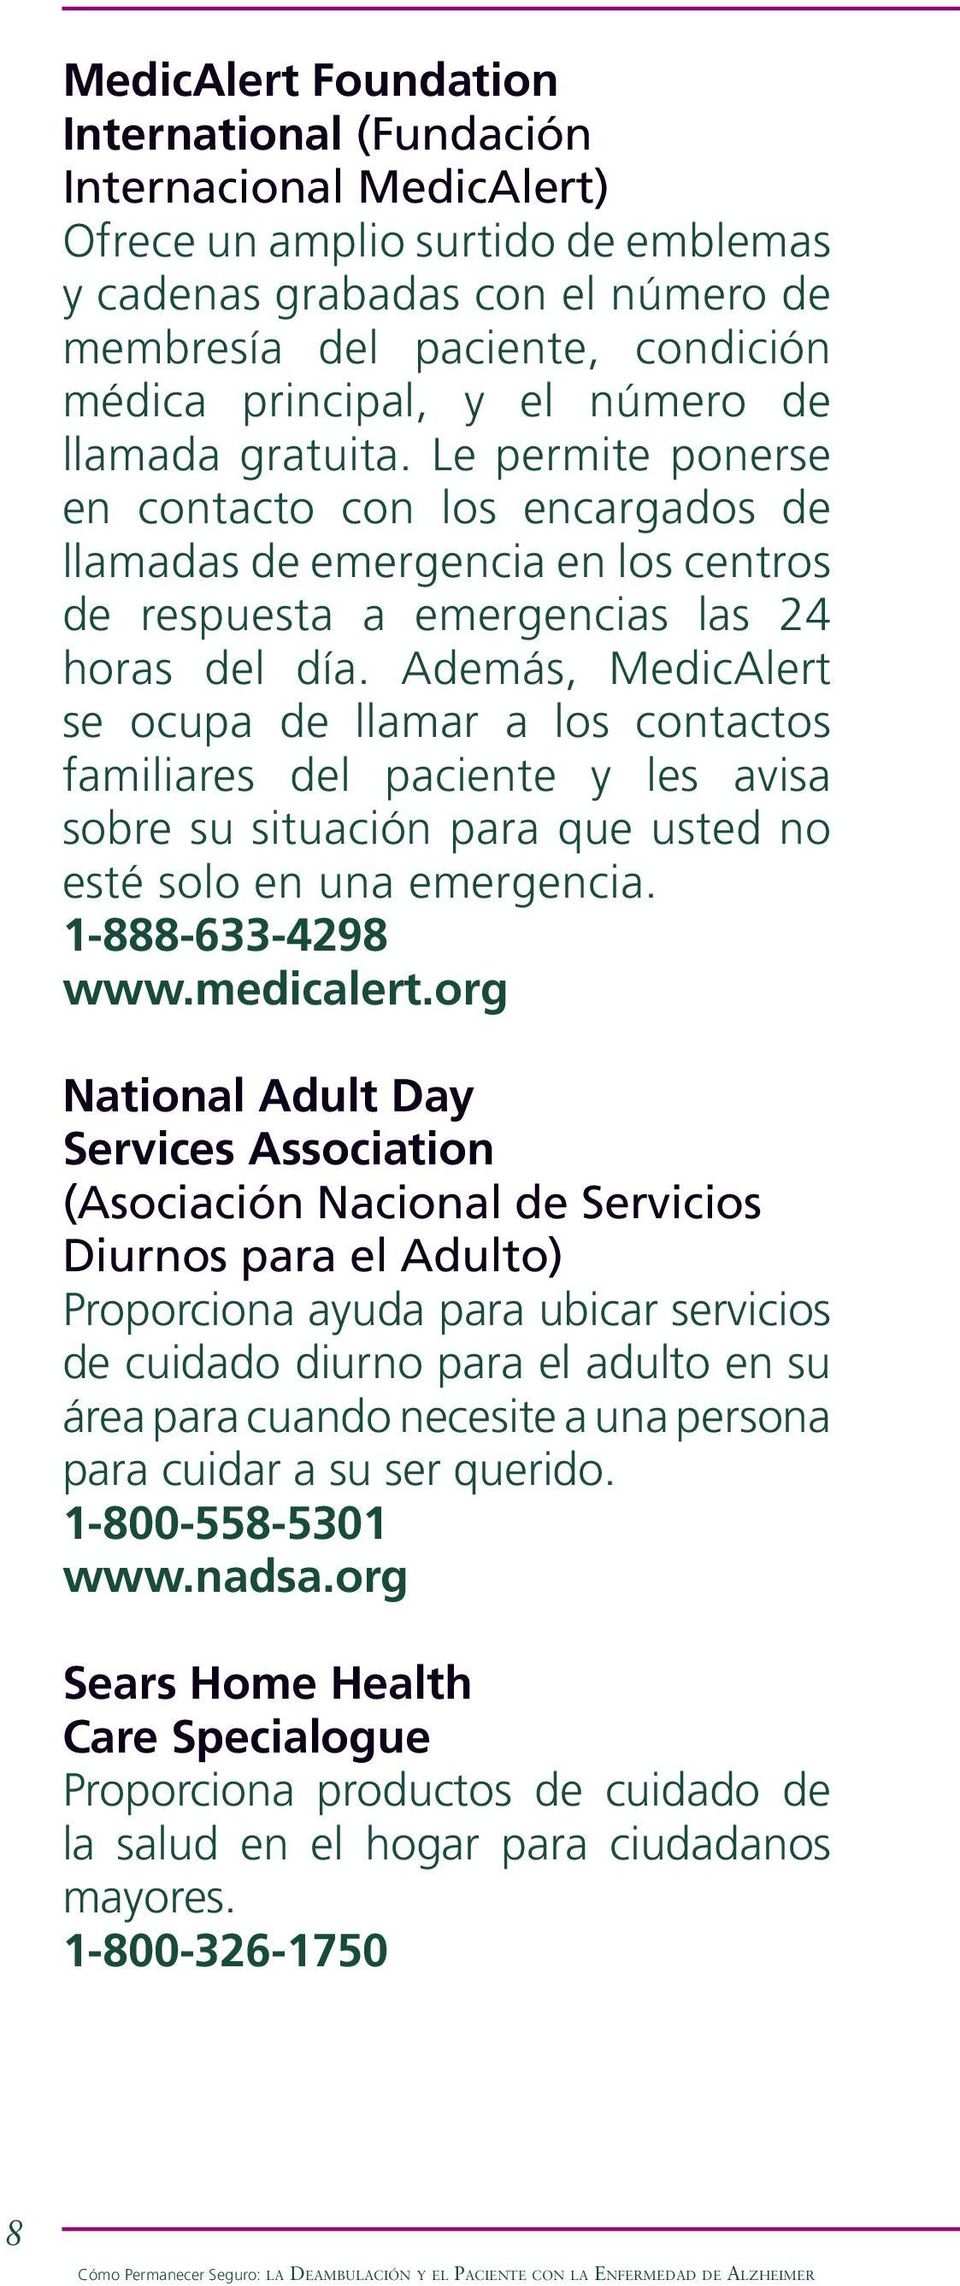 Además, MedicAlert se ocupa de llamar a los contactos familiares del paciente y les avisa sobre su situación para que usted no esté solo en una emergencia. 1-888-633-4298 www.medicalert.